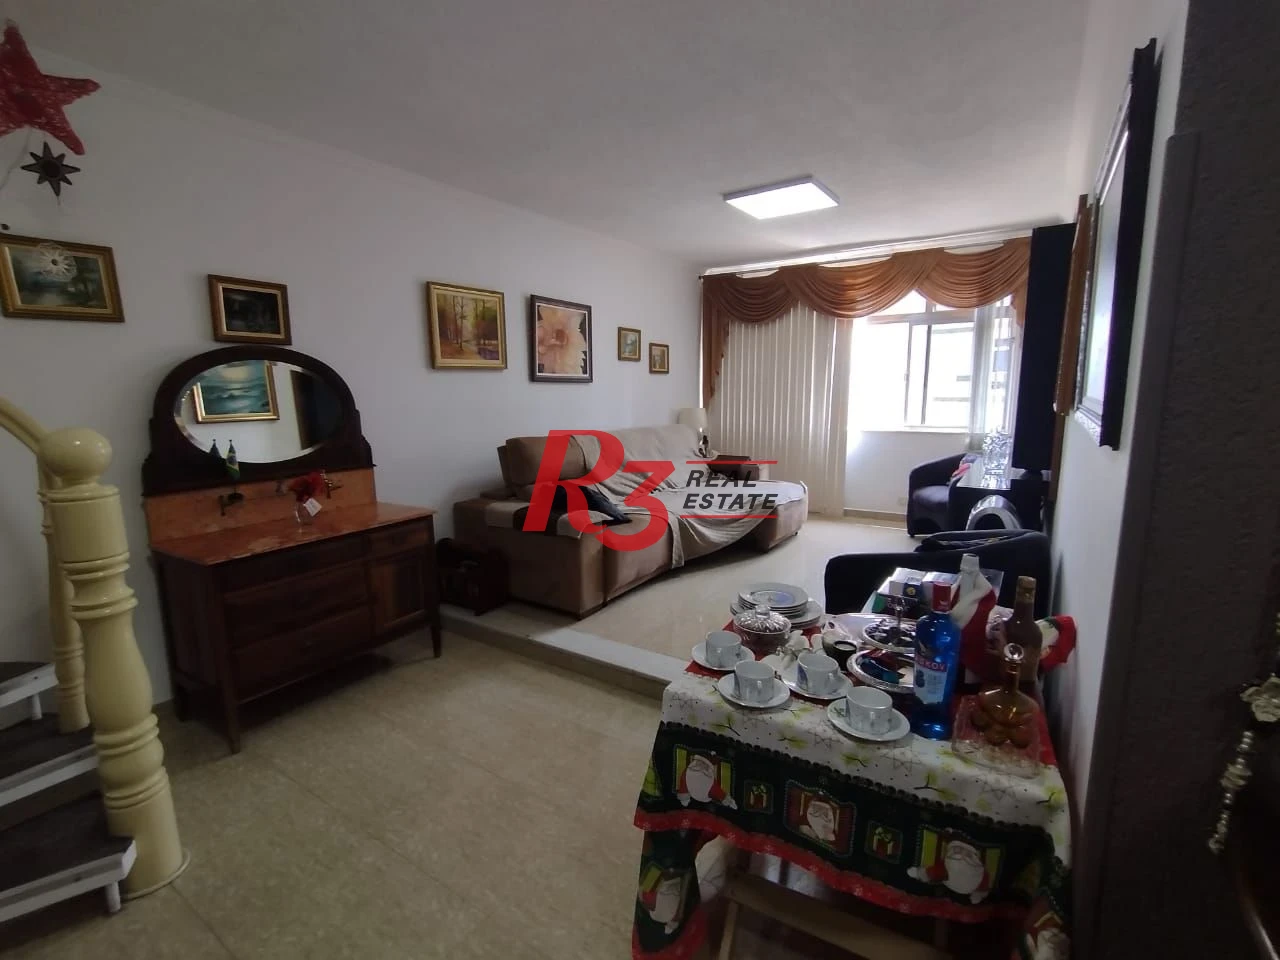 Cobertura com 2 dormitórios à venda, 223 m² por R$ 1.325.000,00 - Aparecida - Santos/SP